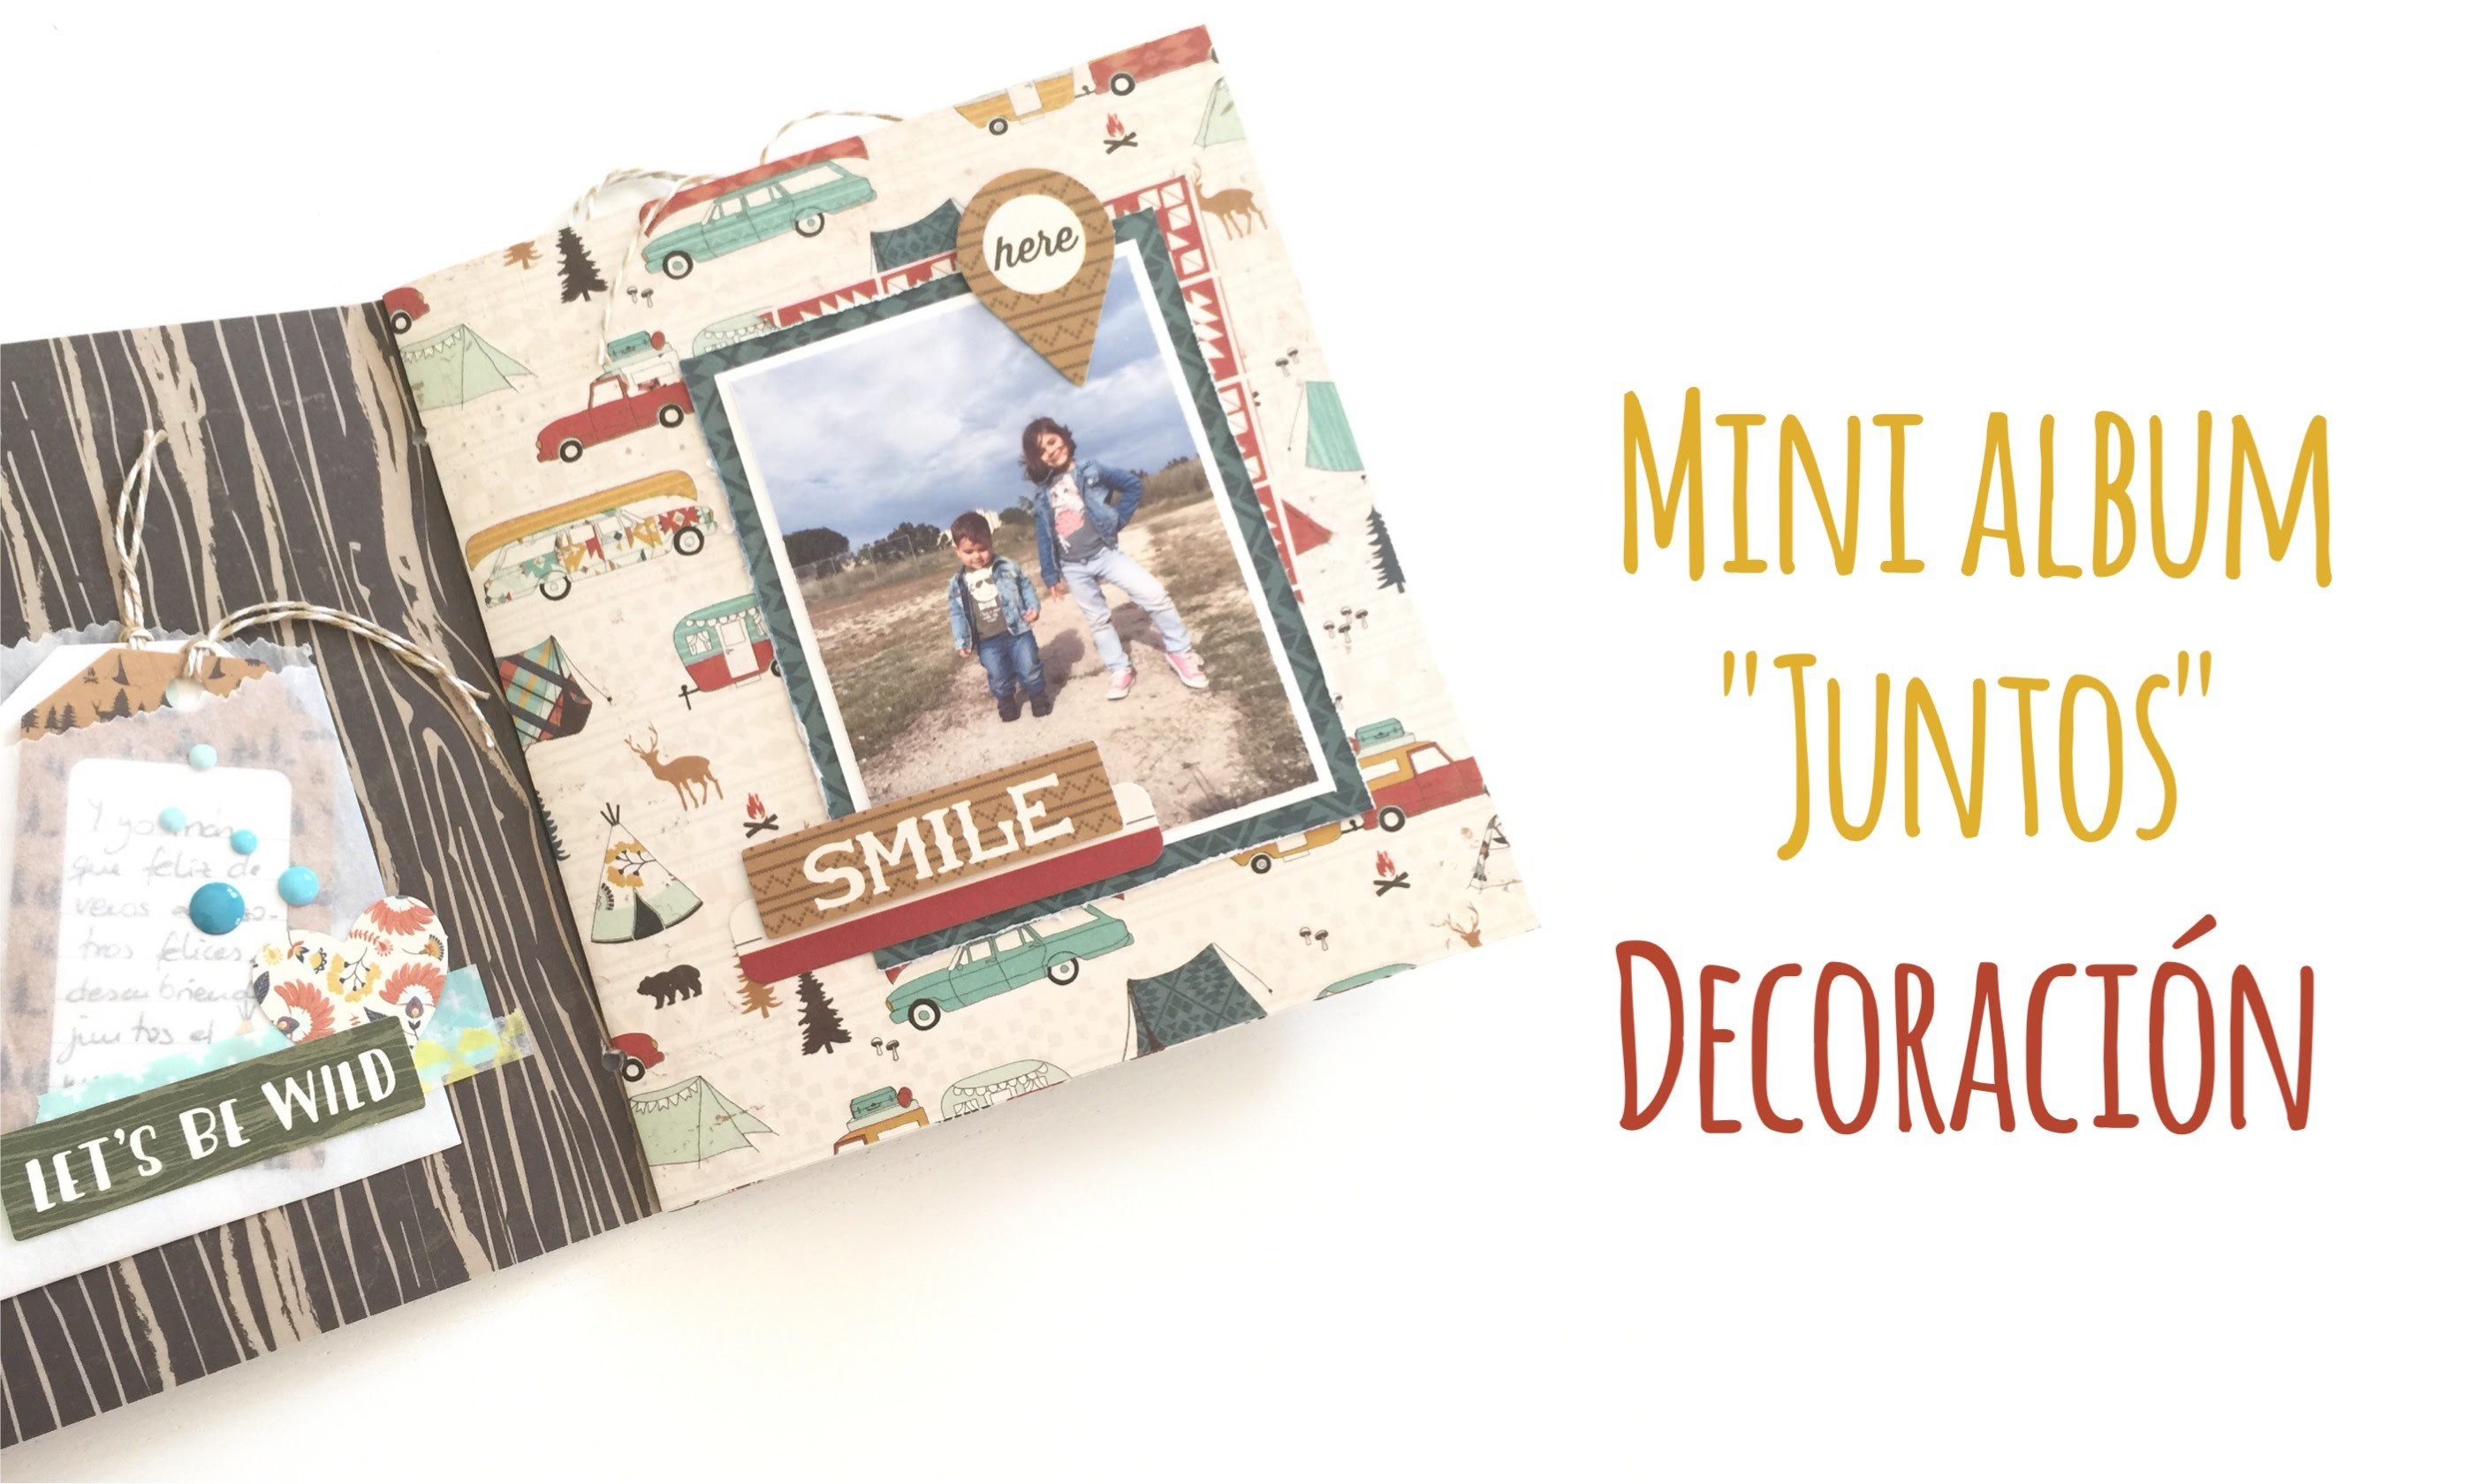 Mini album "Juntos" - Decoración - TUTORIAL Scrapbook